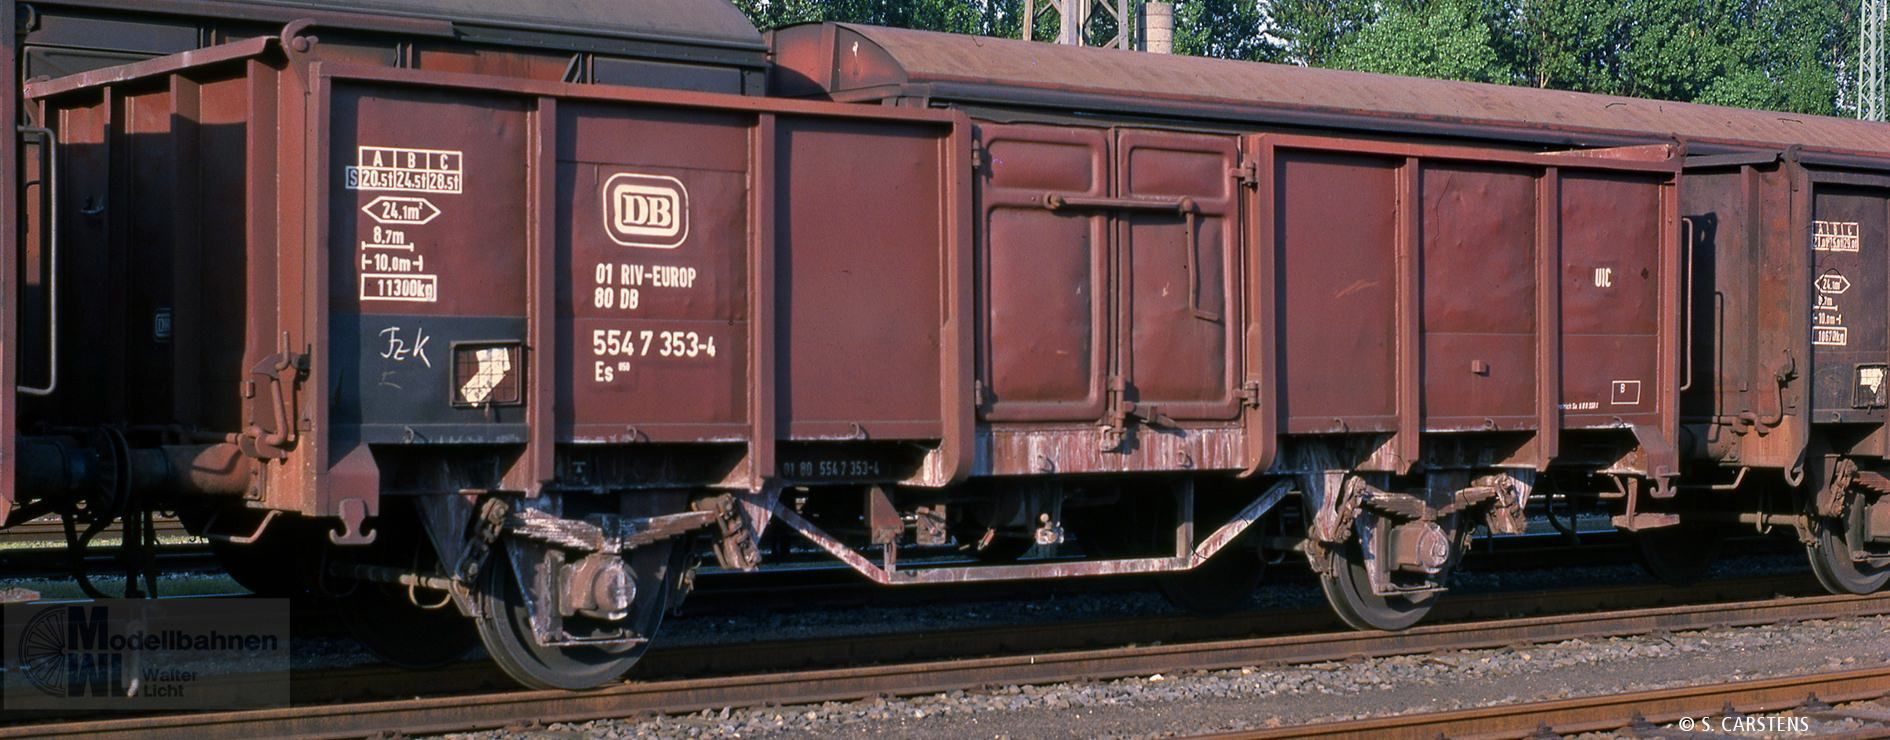 Brawa 50060 - Güterwagen offen DB Ep.IV 01 80 554 7 353-4 H0/GL